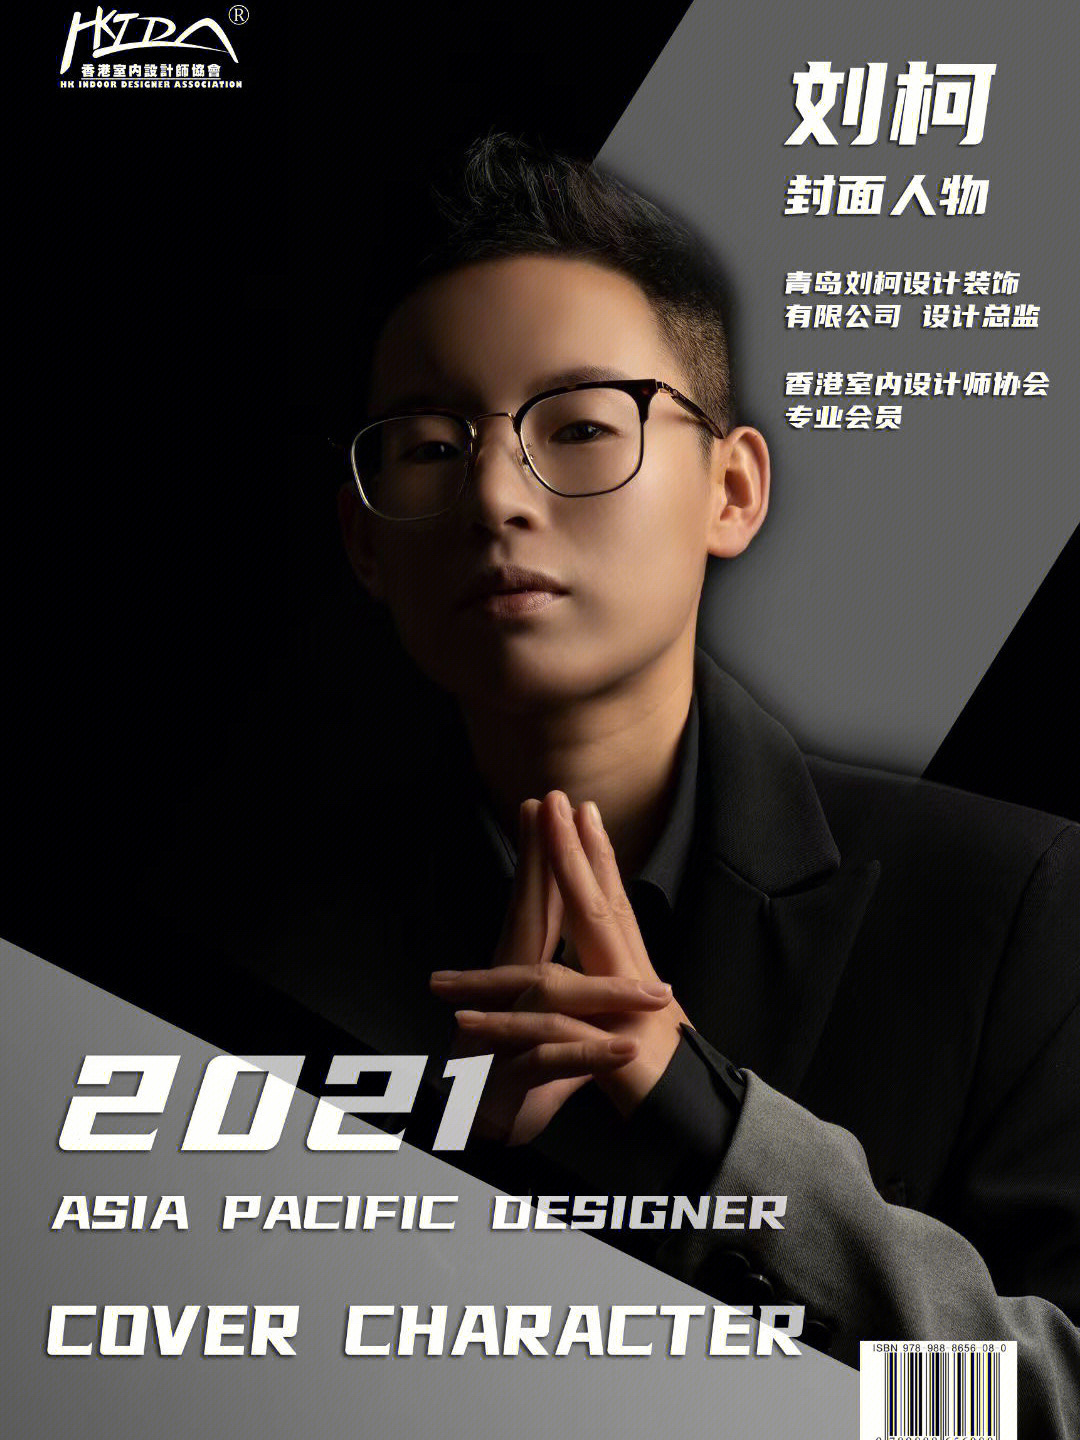 设计装饰有限公司  创始人/设计总监■ 荣获2021亚太设计师封面人物